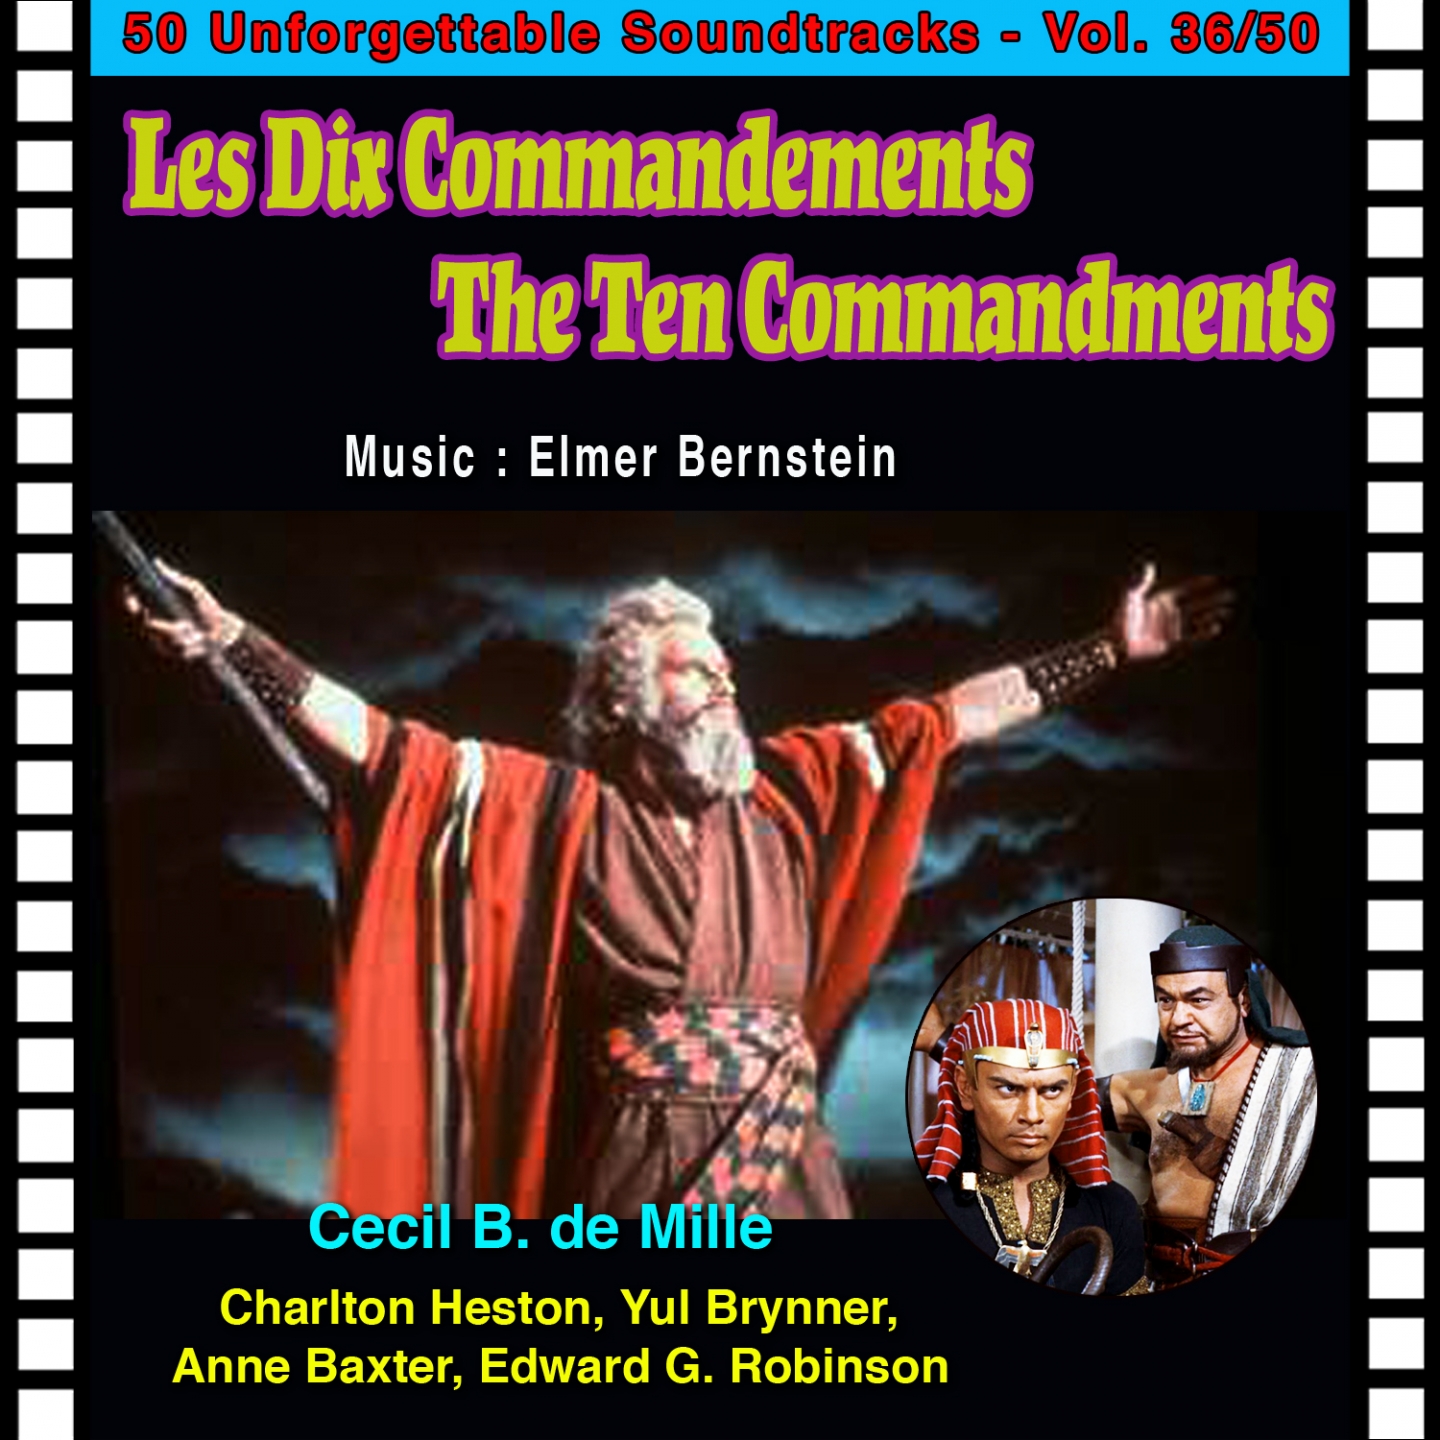 Prelude (Les Dix Commandements - The Ten Commandments)